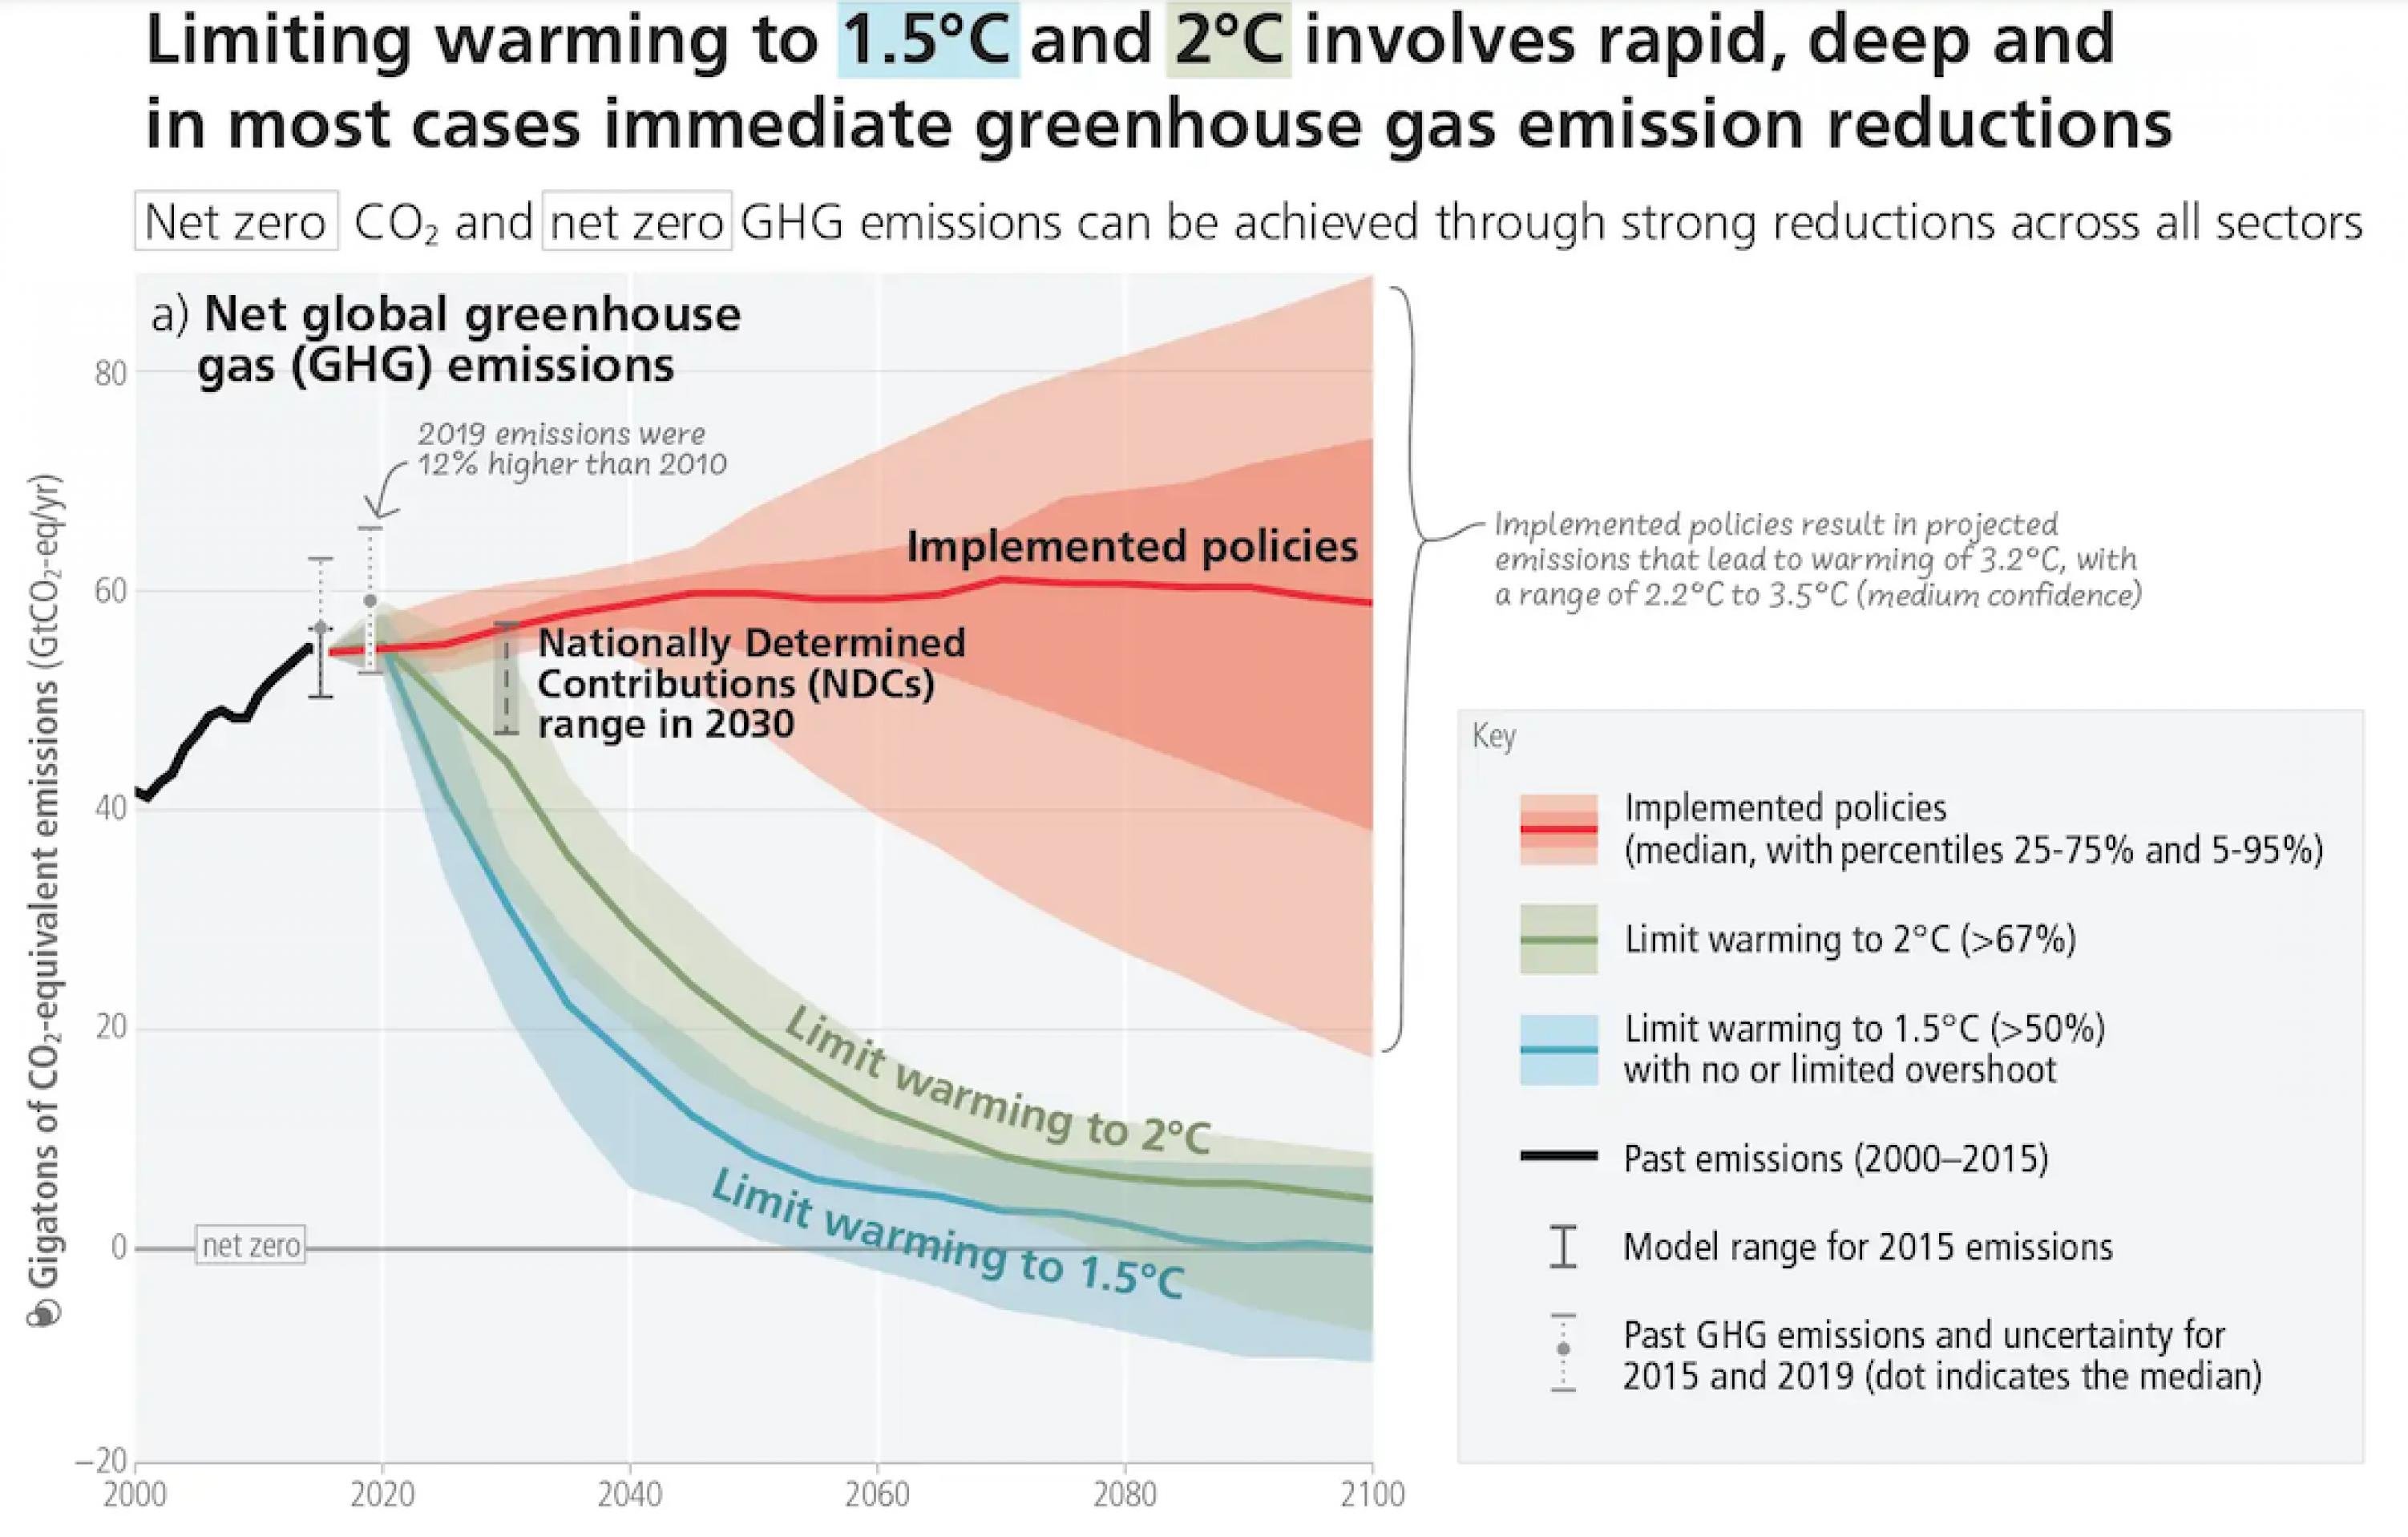 Momentan steuern wir auf 3,2 Grad globale Erwärmung zu – das zeigt die rote Linie auf.